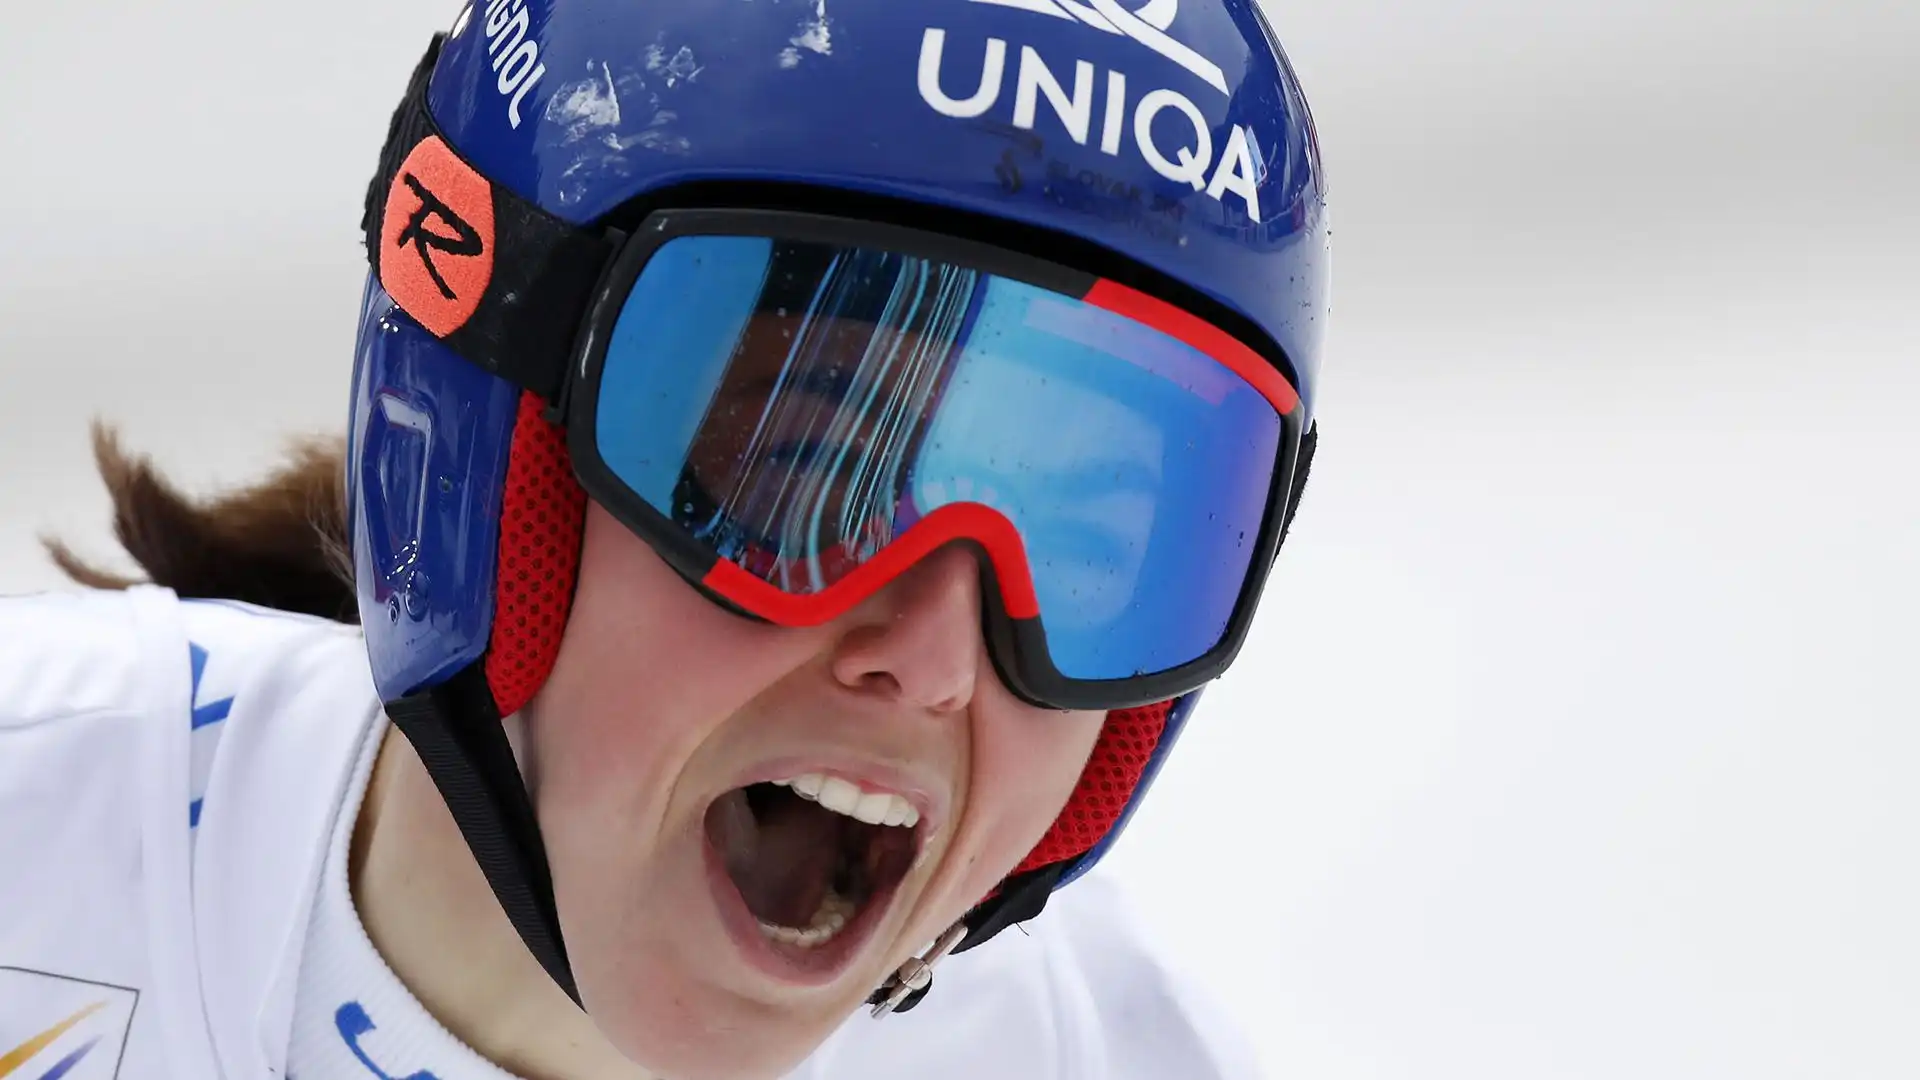 Ha vinto una medaglia d'oro nello slalom speciale alle olimpiadi invernali di Pechino 2022